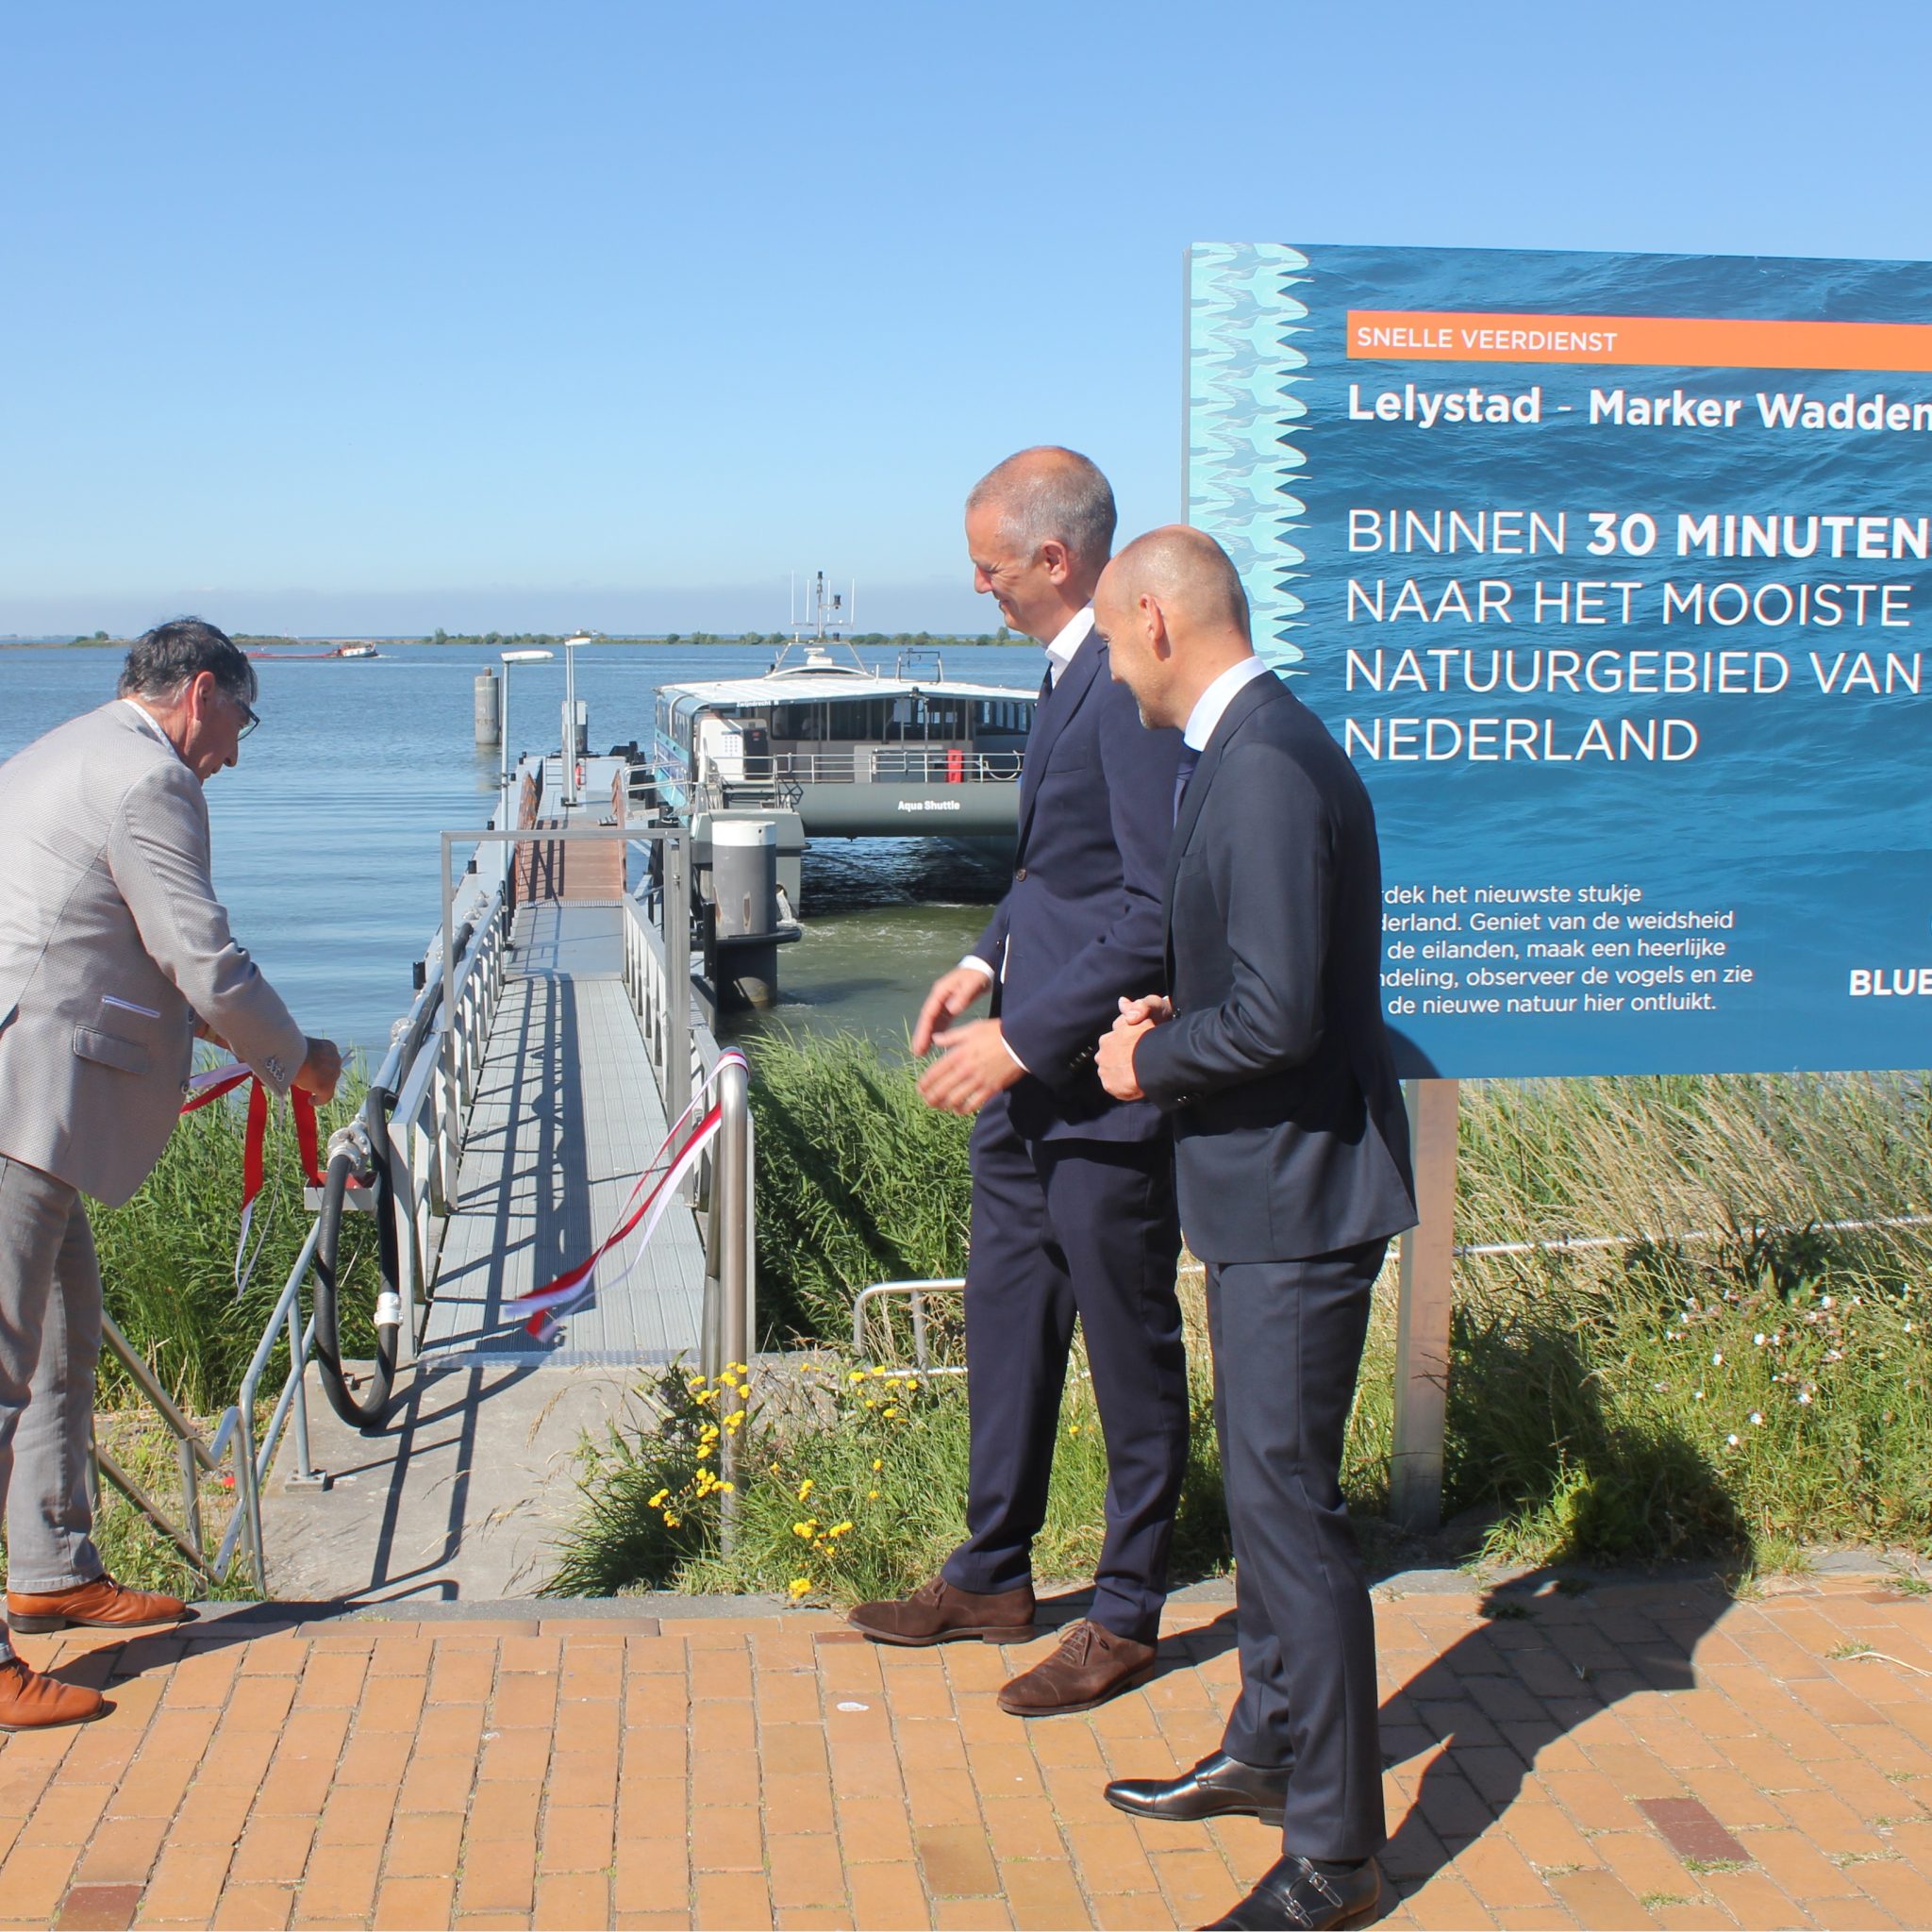 Wethouder Luc Baaten van Lelystad opent de veerdienst aan de nieuwe steiger in de Bataviahaven. Op de achtergrond de catamaran waarmeer Blue Amigo de dienst onderhoudt. (Foto Blue Amigo)